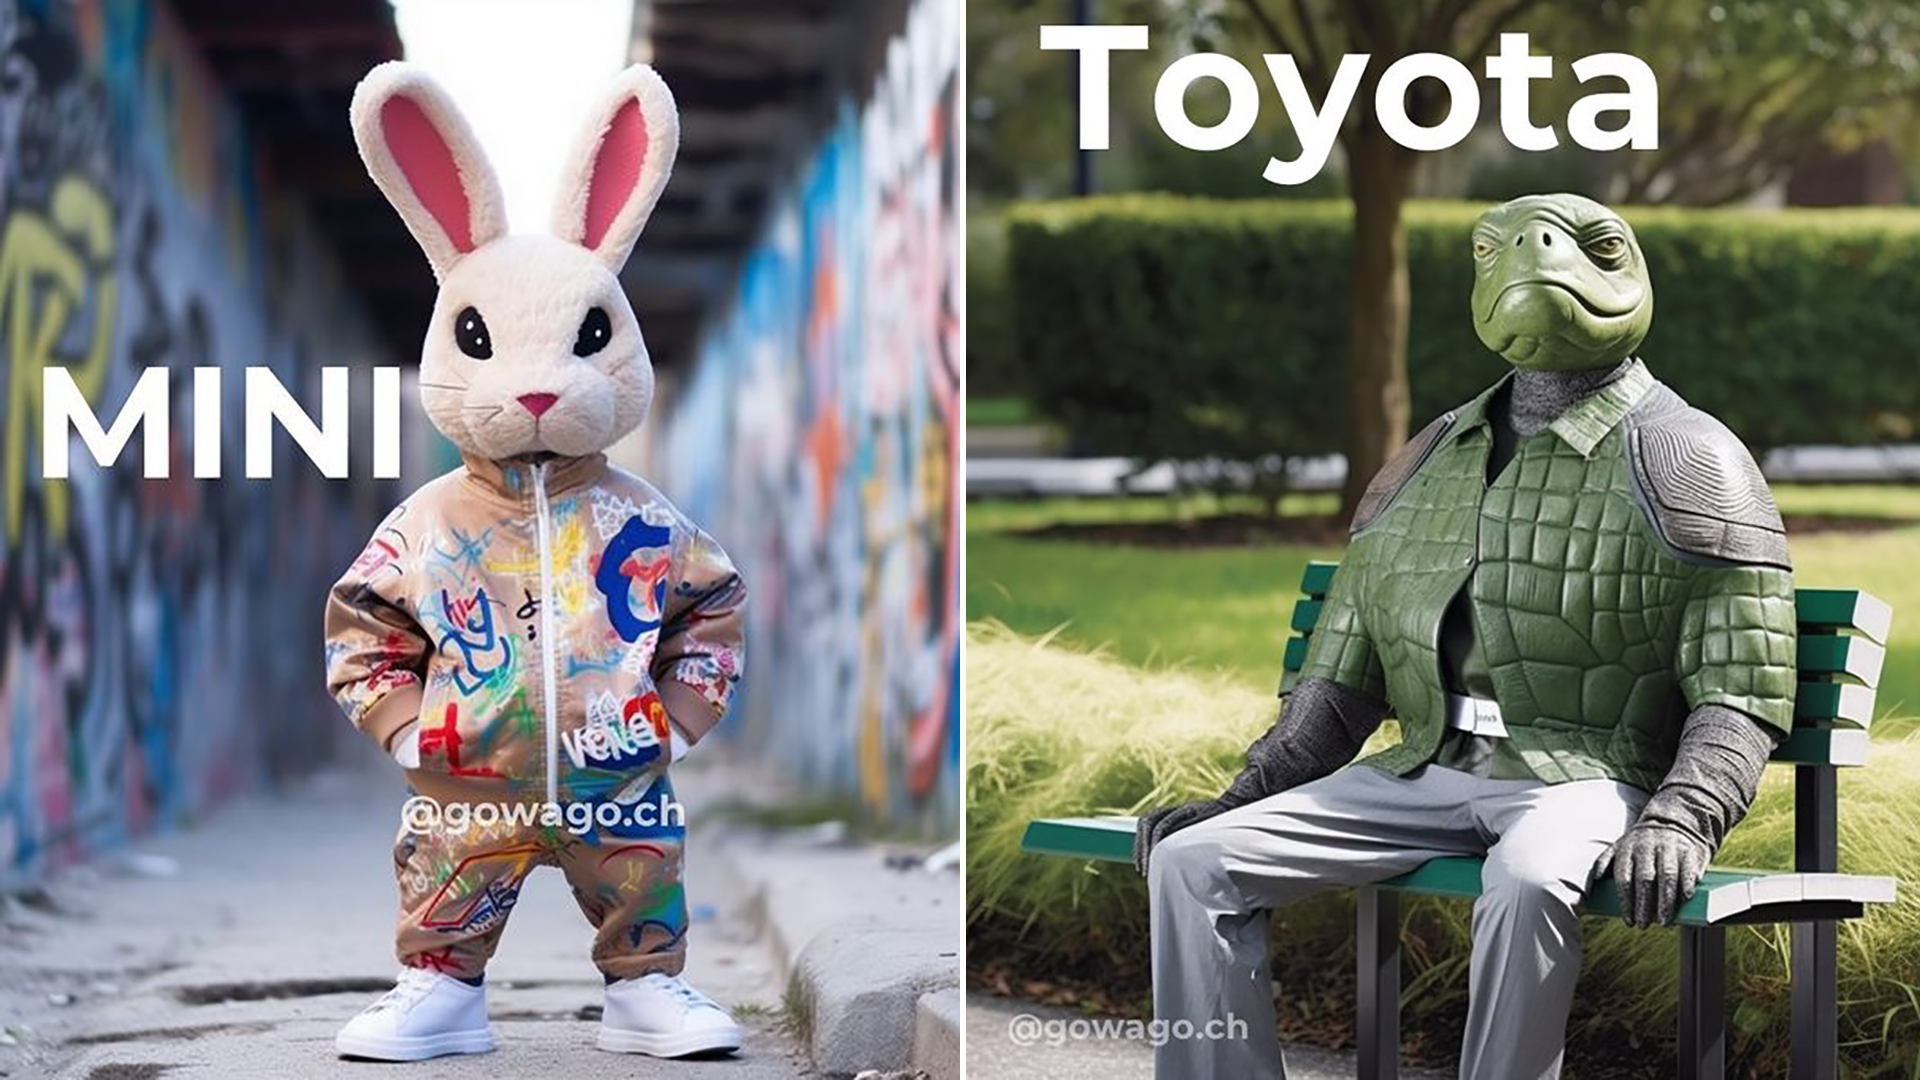 MINI puede darse cuenta por satisfecho con un conejo moderno y ágil, en cambio Toyota podría considerar que una tortuga representa algunos valores de su marca, pero algunos definitivamente no